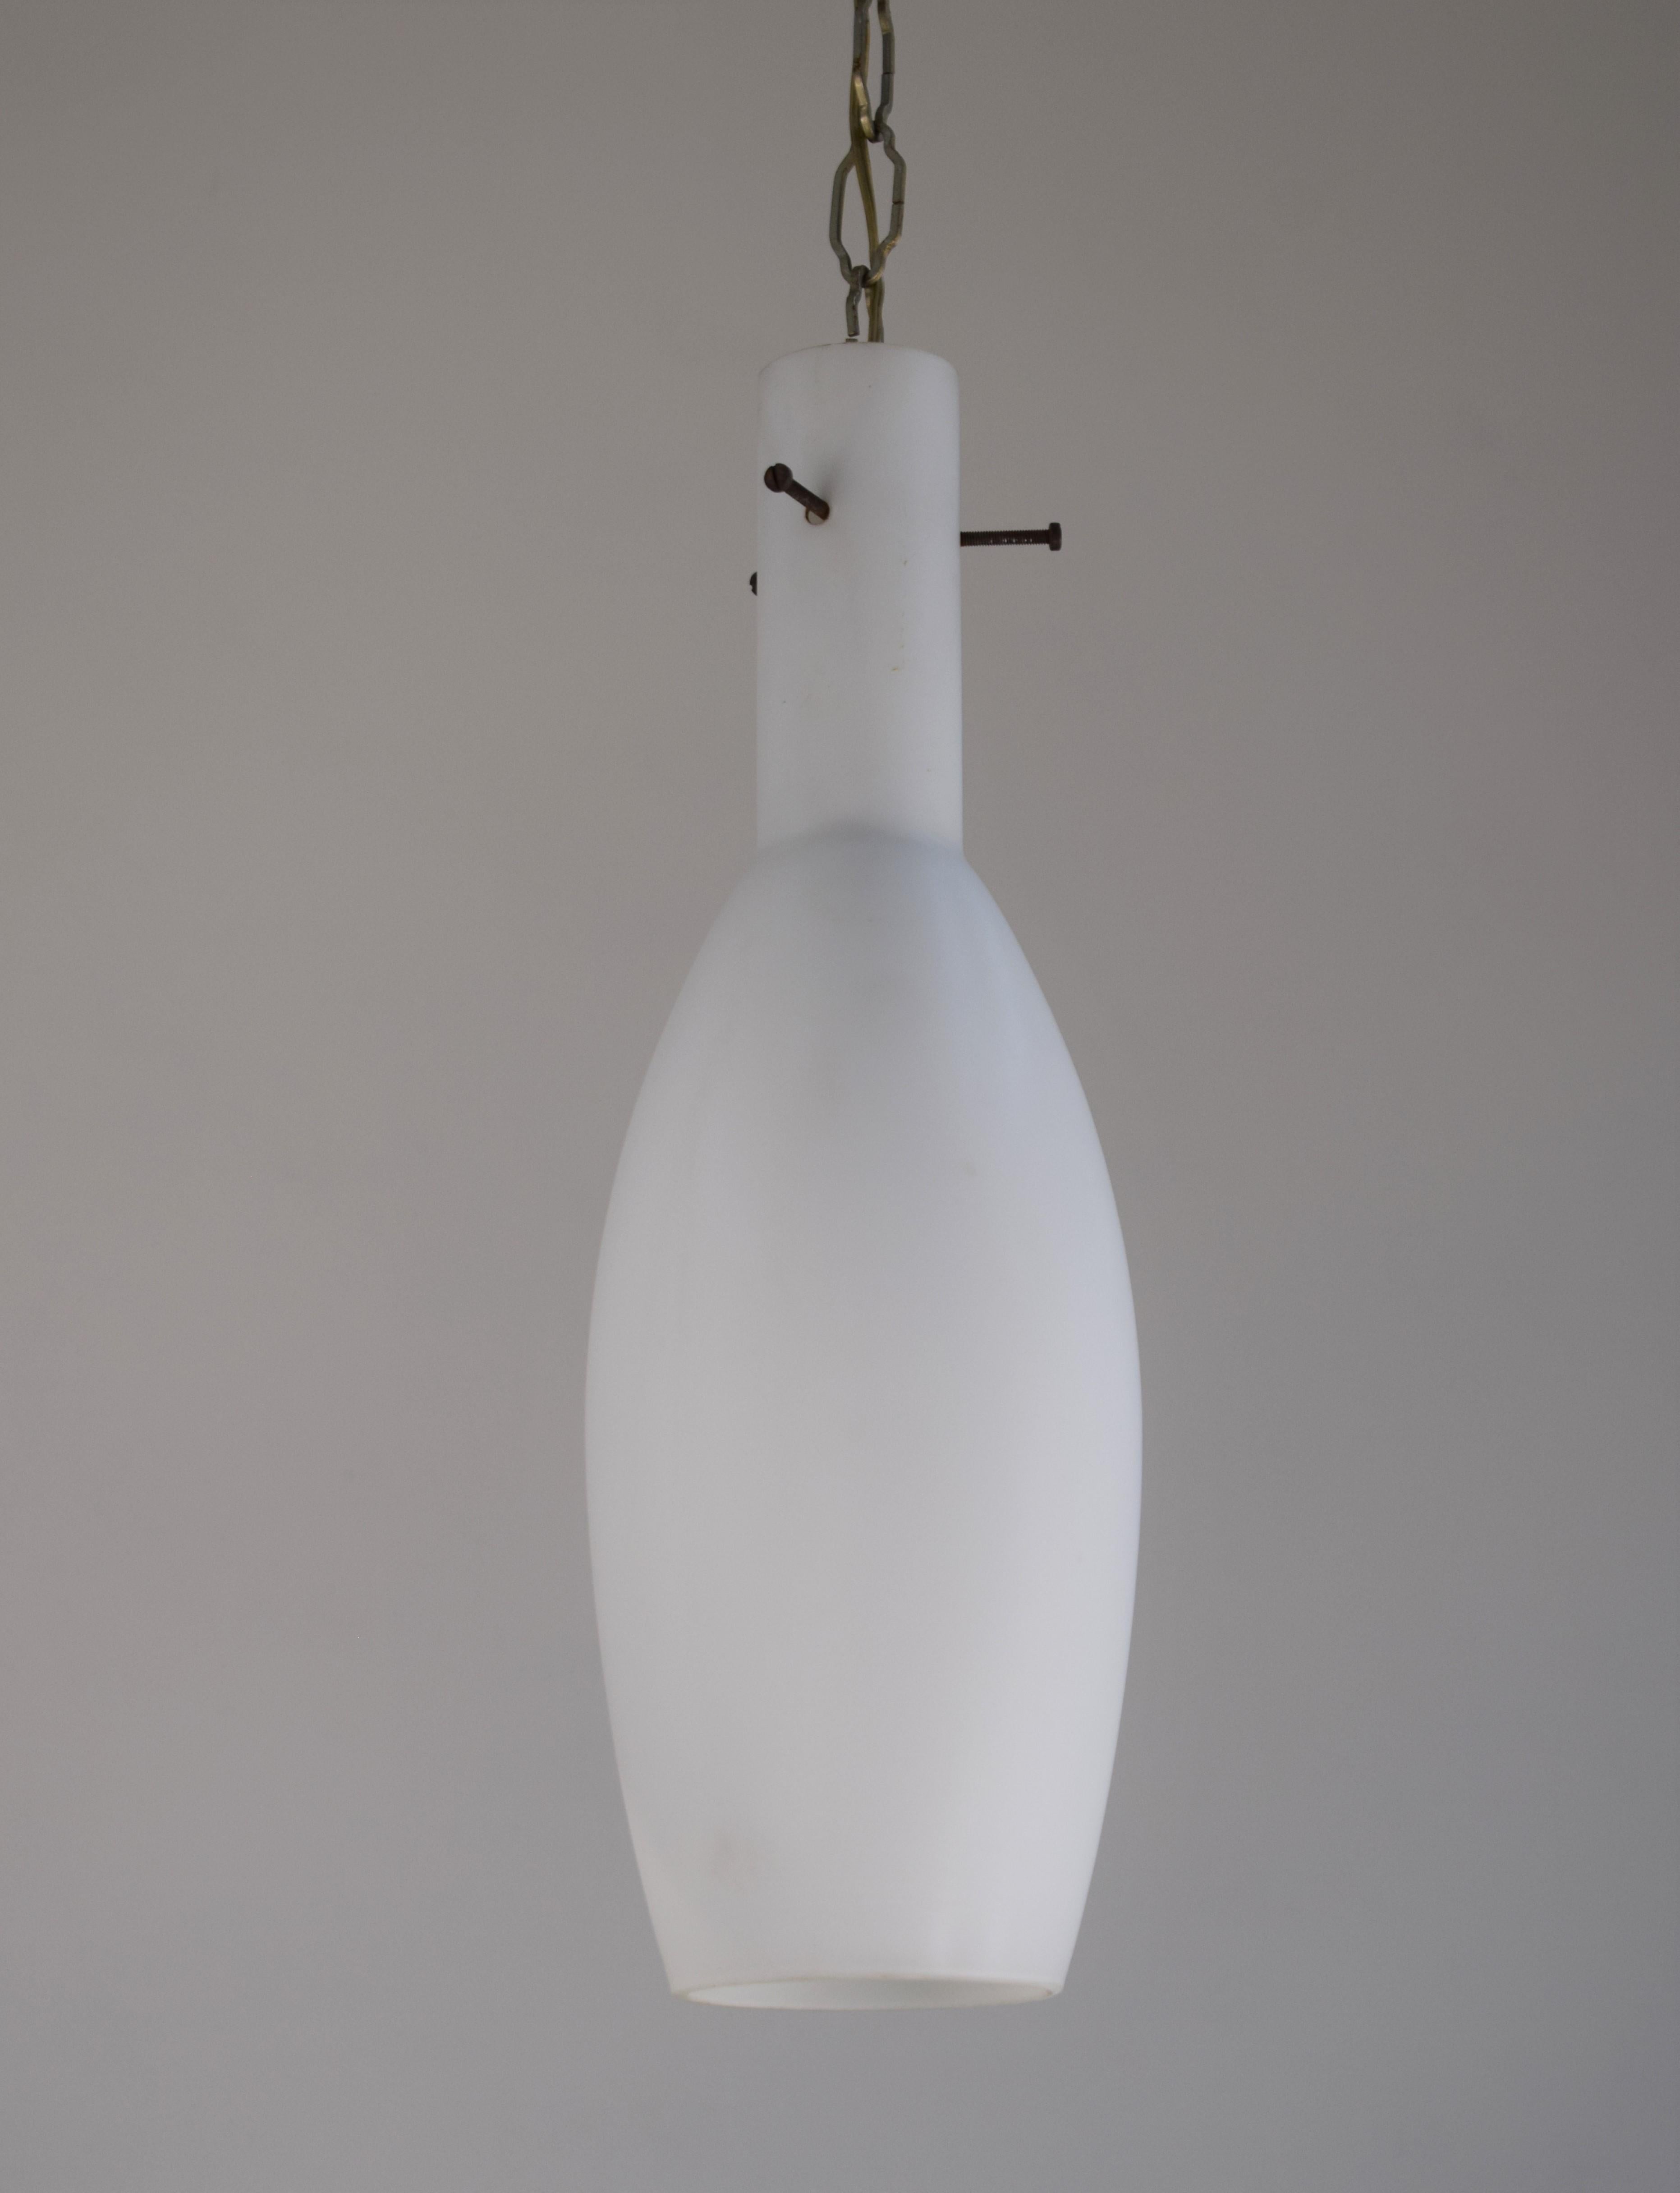 Italian pendant lamp, opaline glass, 1960s.

Dimensions: H= 81 cm; D= 12 cm; H glass= 40cm.